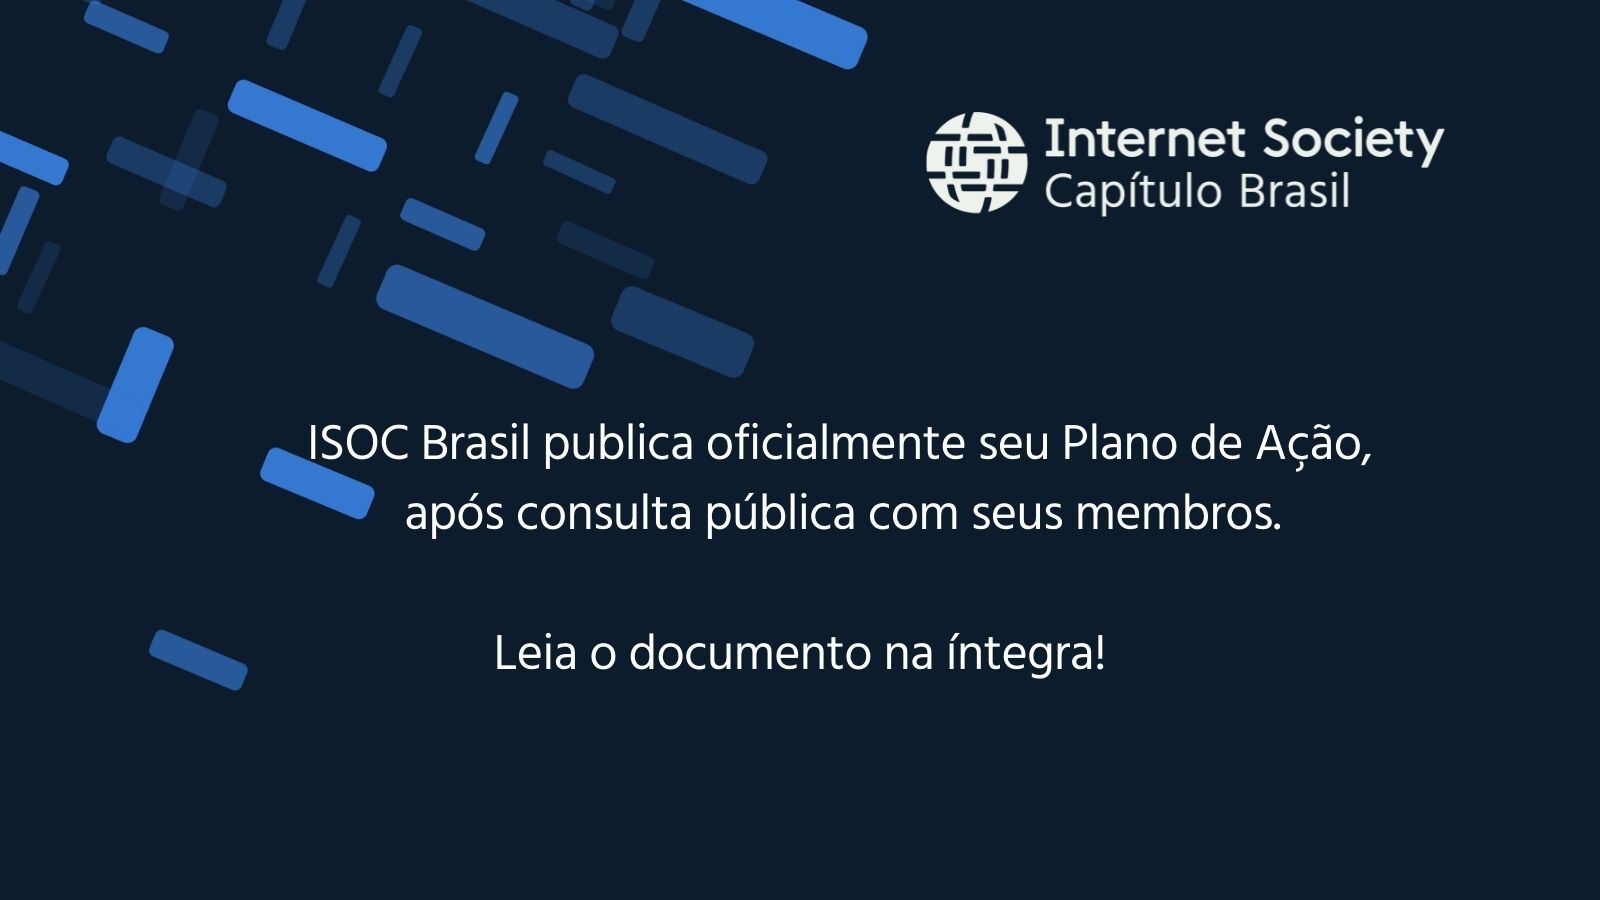 ISOC Brasil publica oficialmente o seu Plano de Ação para este ano. 